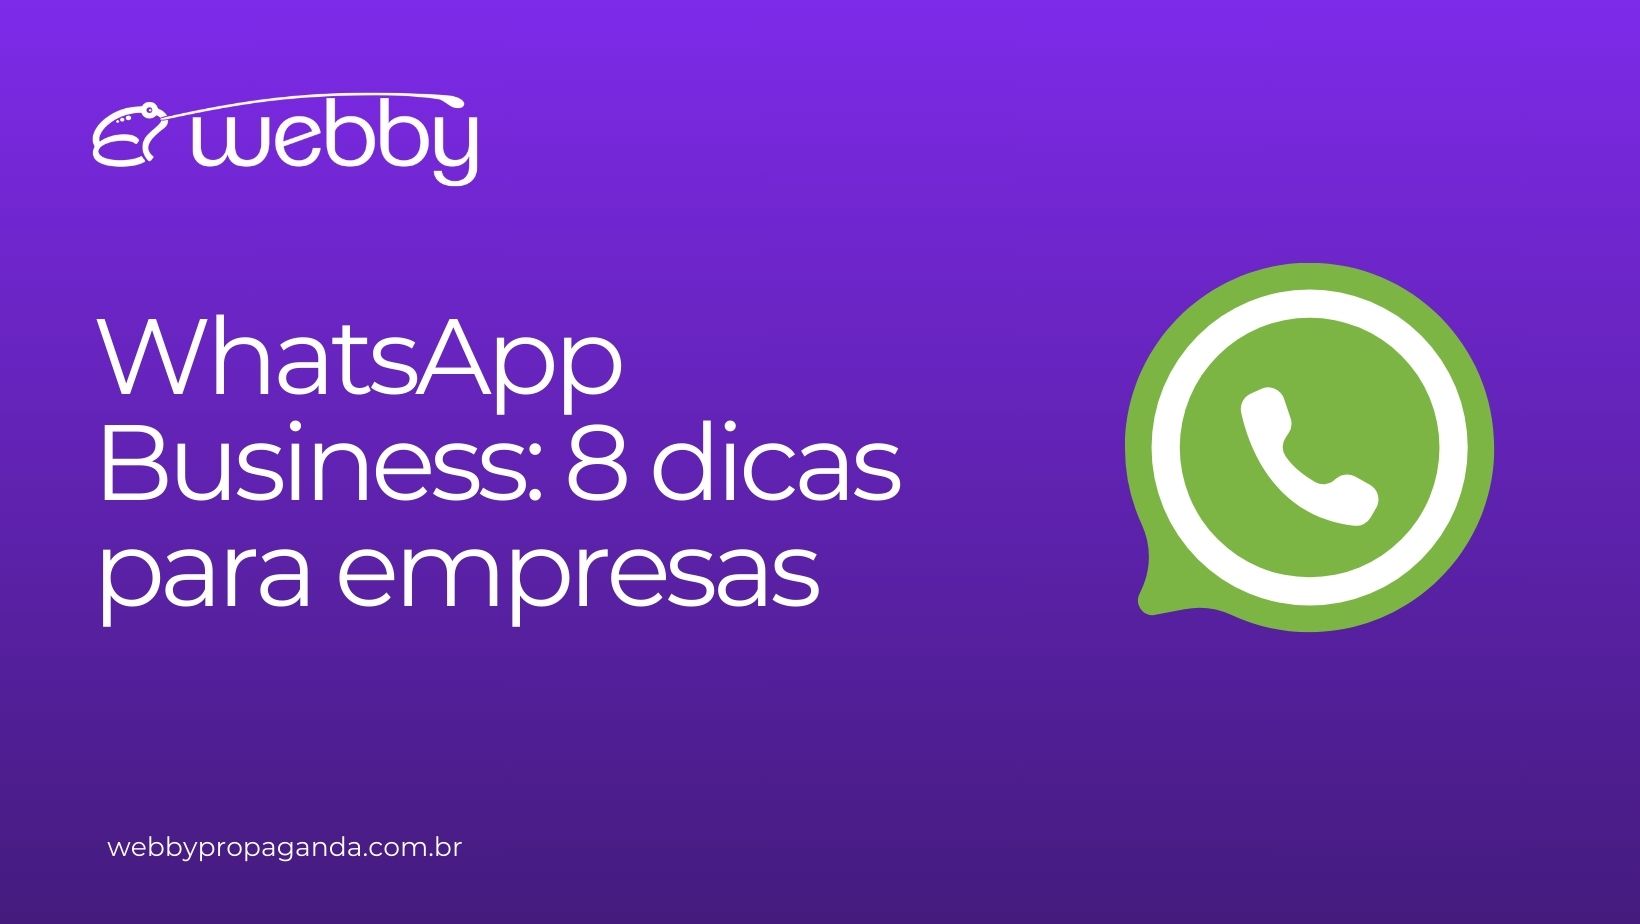 WhatsApp Business: 8 dicas para empresas